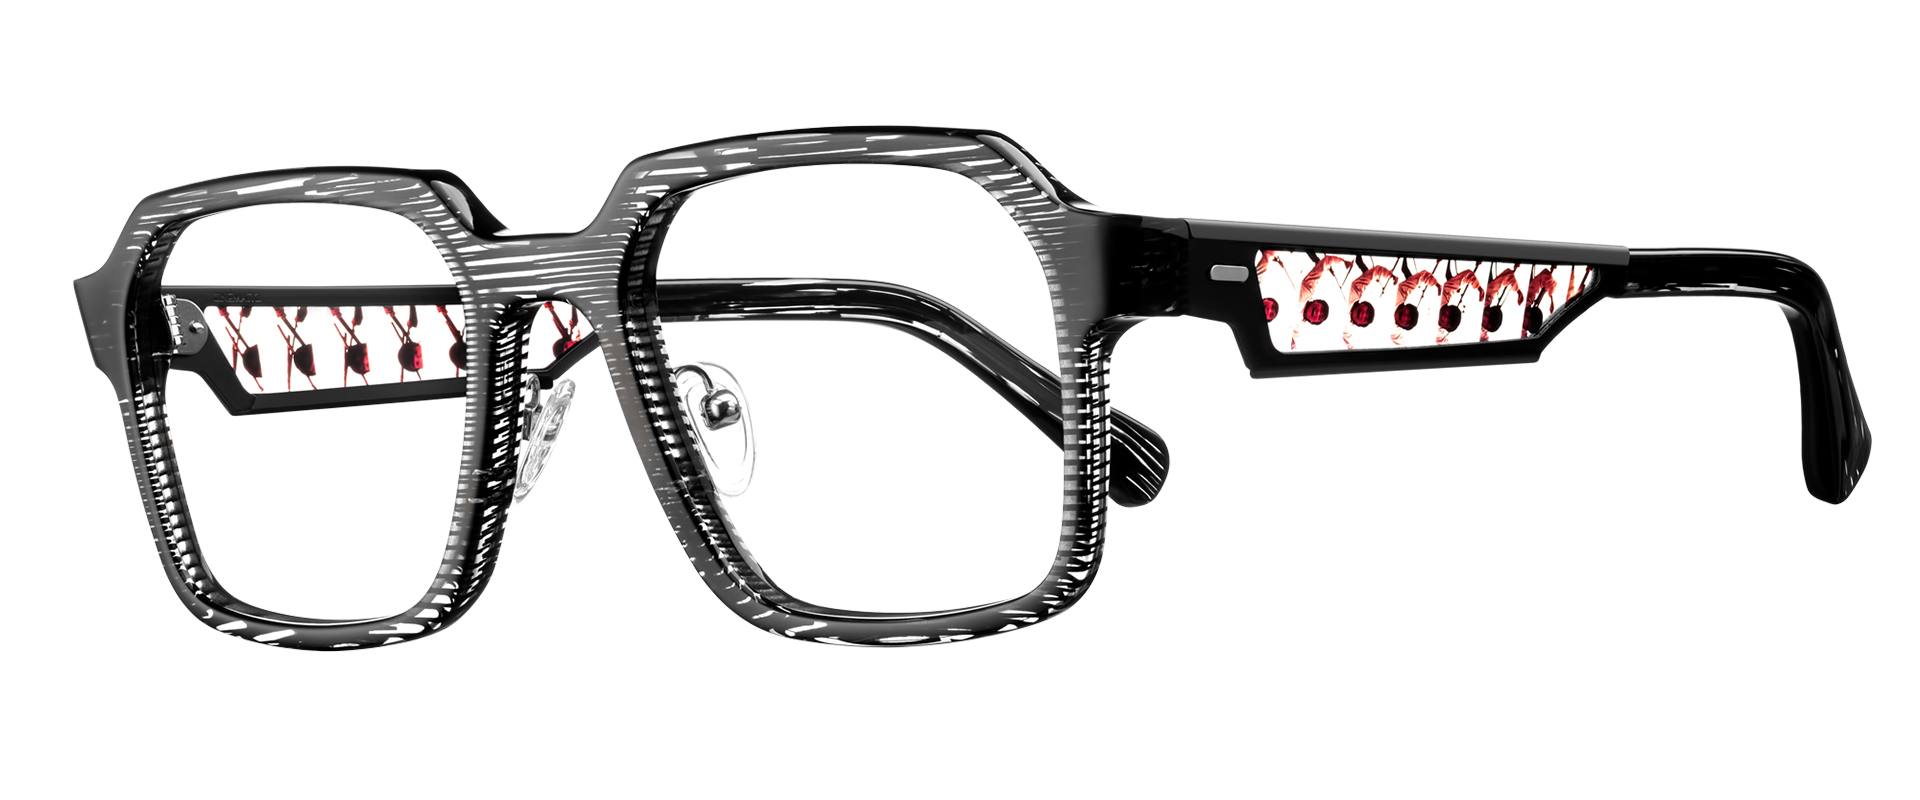 This Eyewear Brand Reuses Old Films To Create Glasses Cinematiq Eyewear Vintage Film